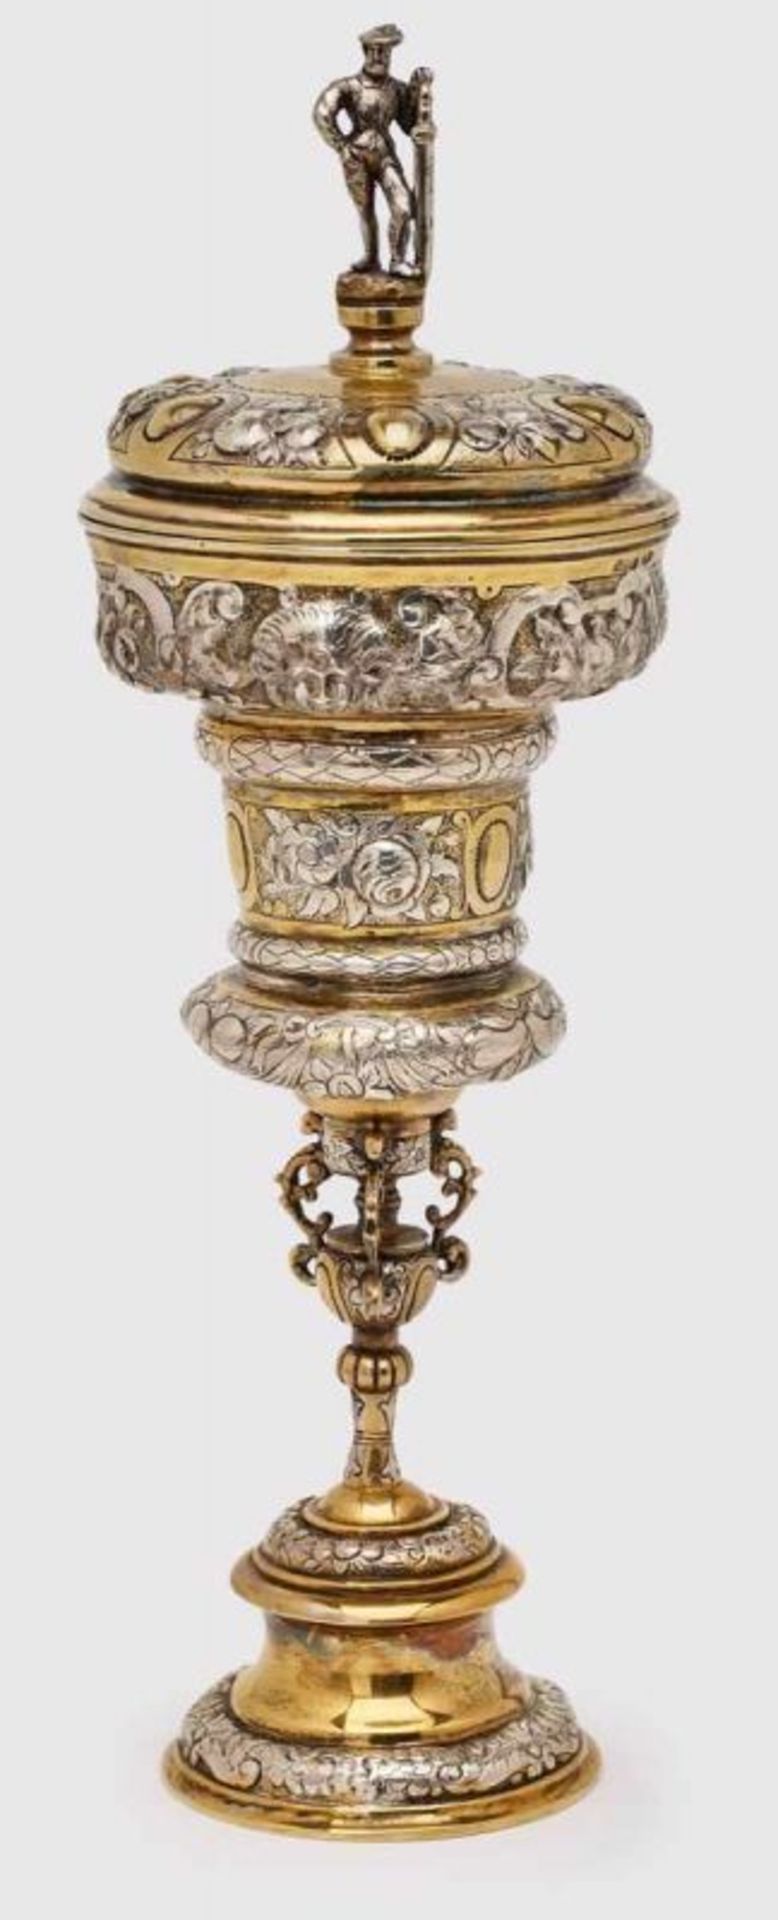 Kl. Pokal, Renaissance-Stil, Hanau um 1900. 800er Silber, vergoldet. Fa. Schleissner. Hohe Kuppa, - Bild 3 aus 3